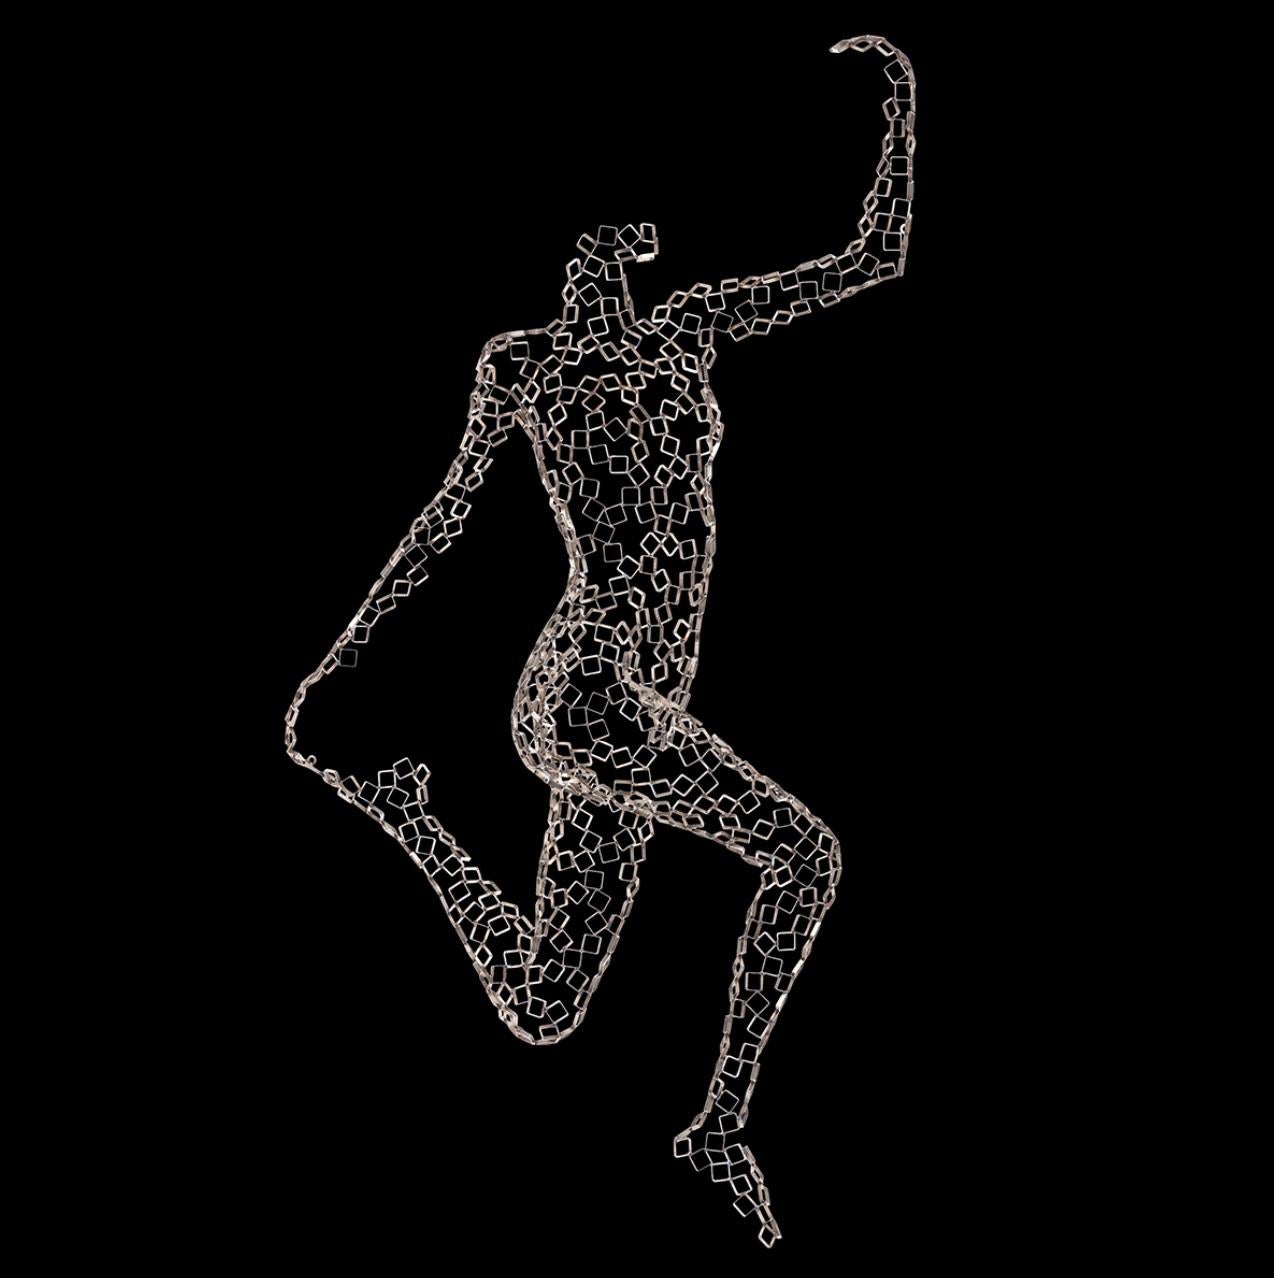 Dancer Isidora - Contemporary Sculpture by Rainer Lagemann